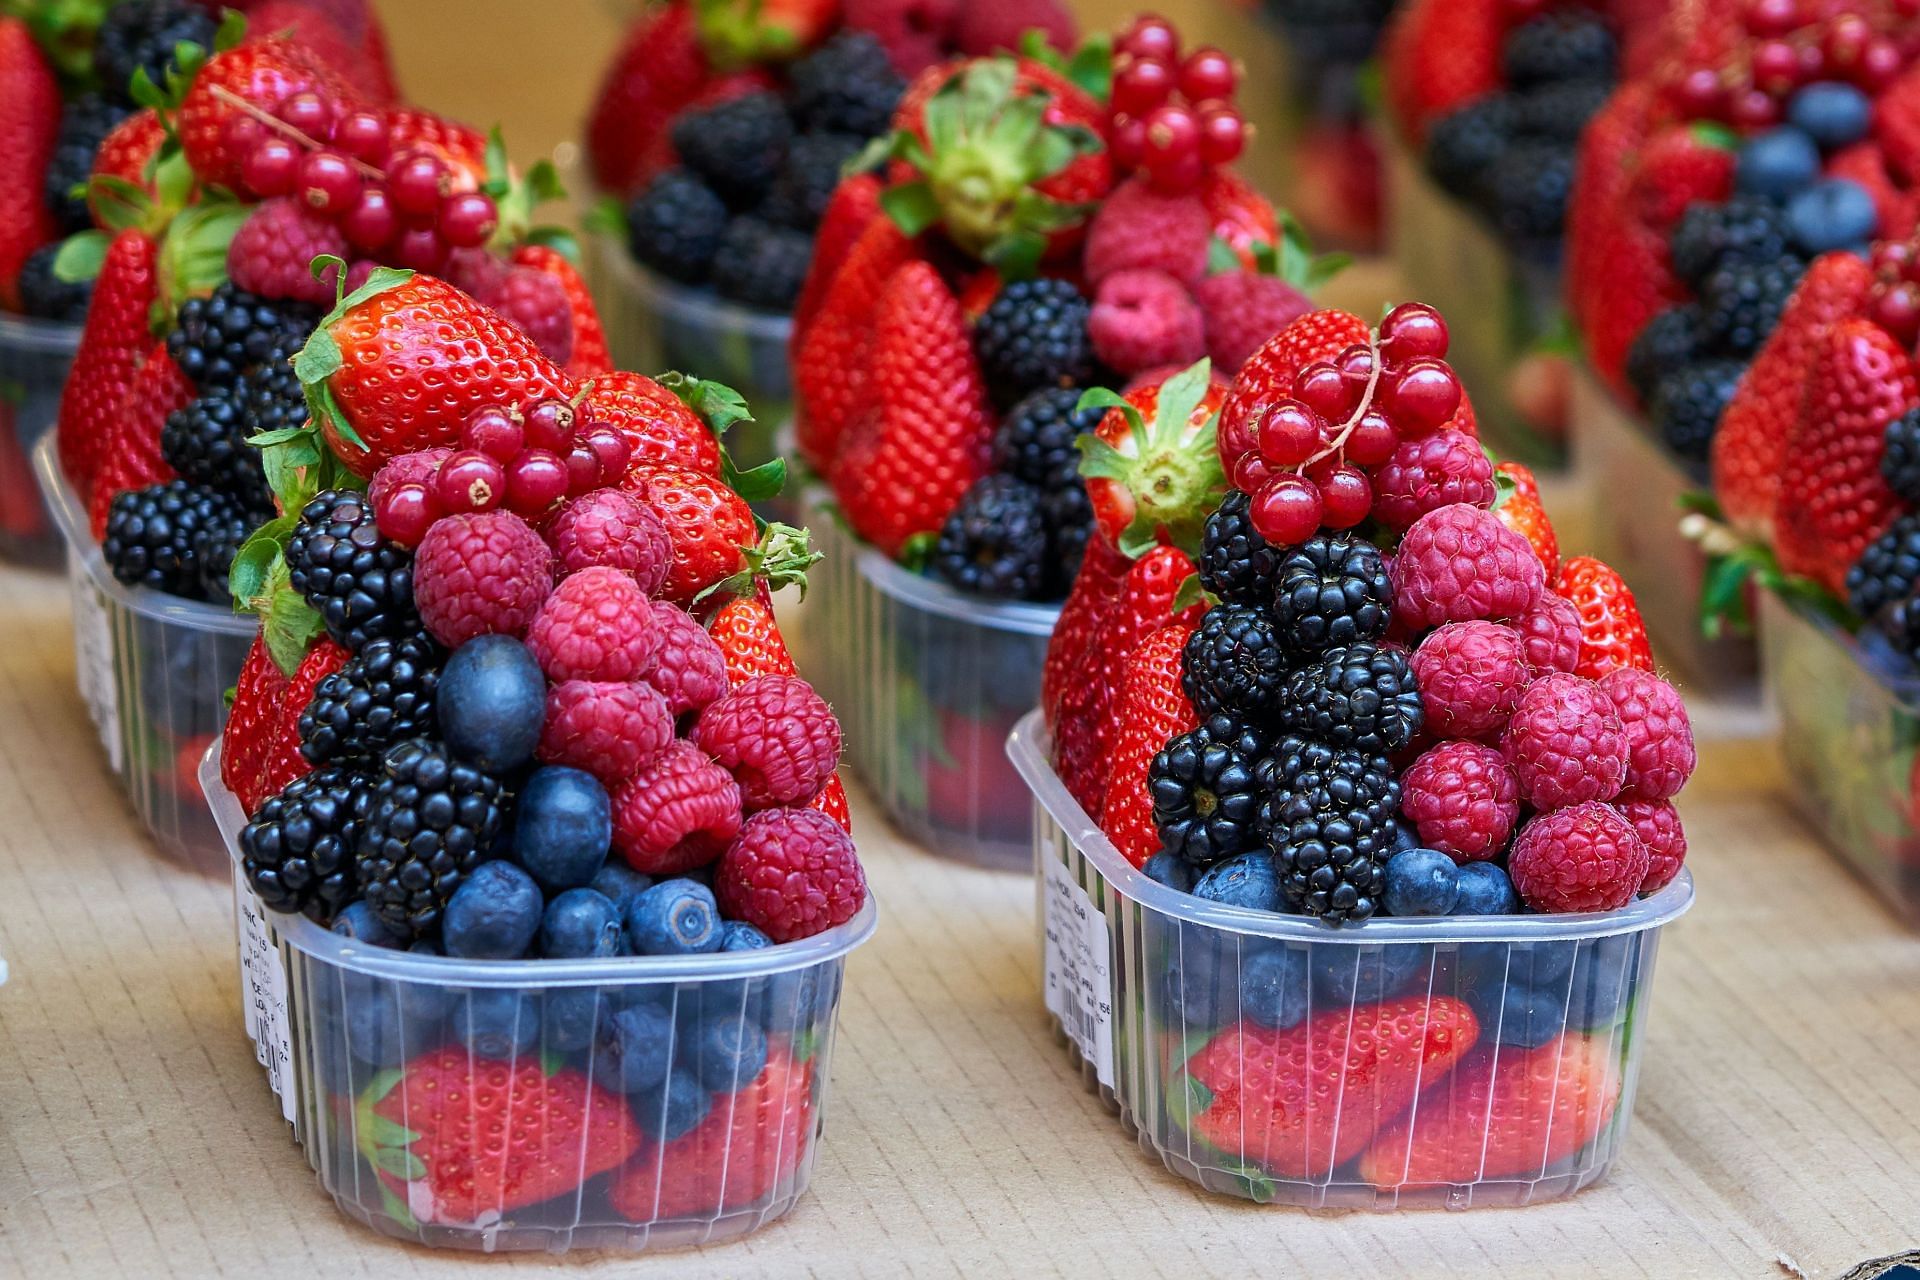 Bobičasto voće je bogato antioksidansima (Slika putem Unsplash/Timo Volz)